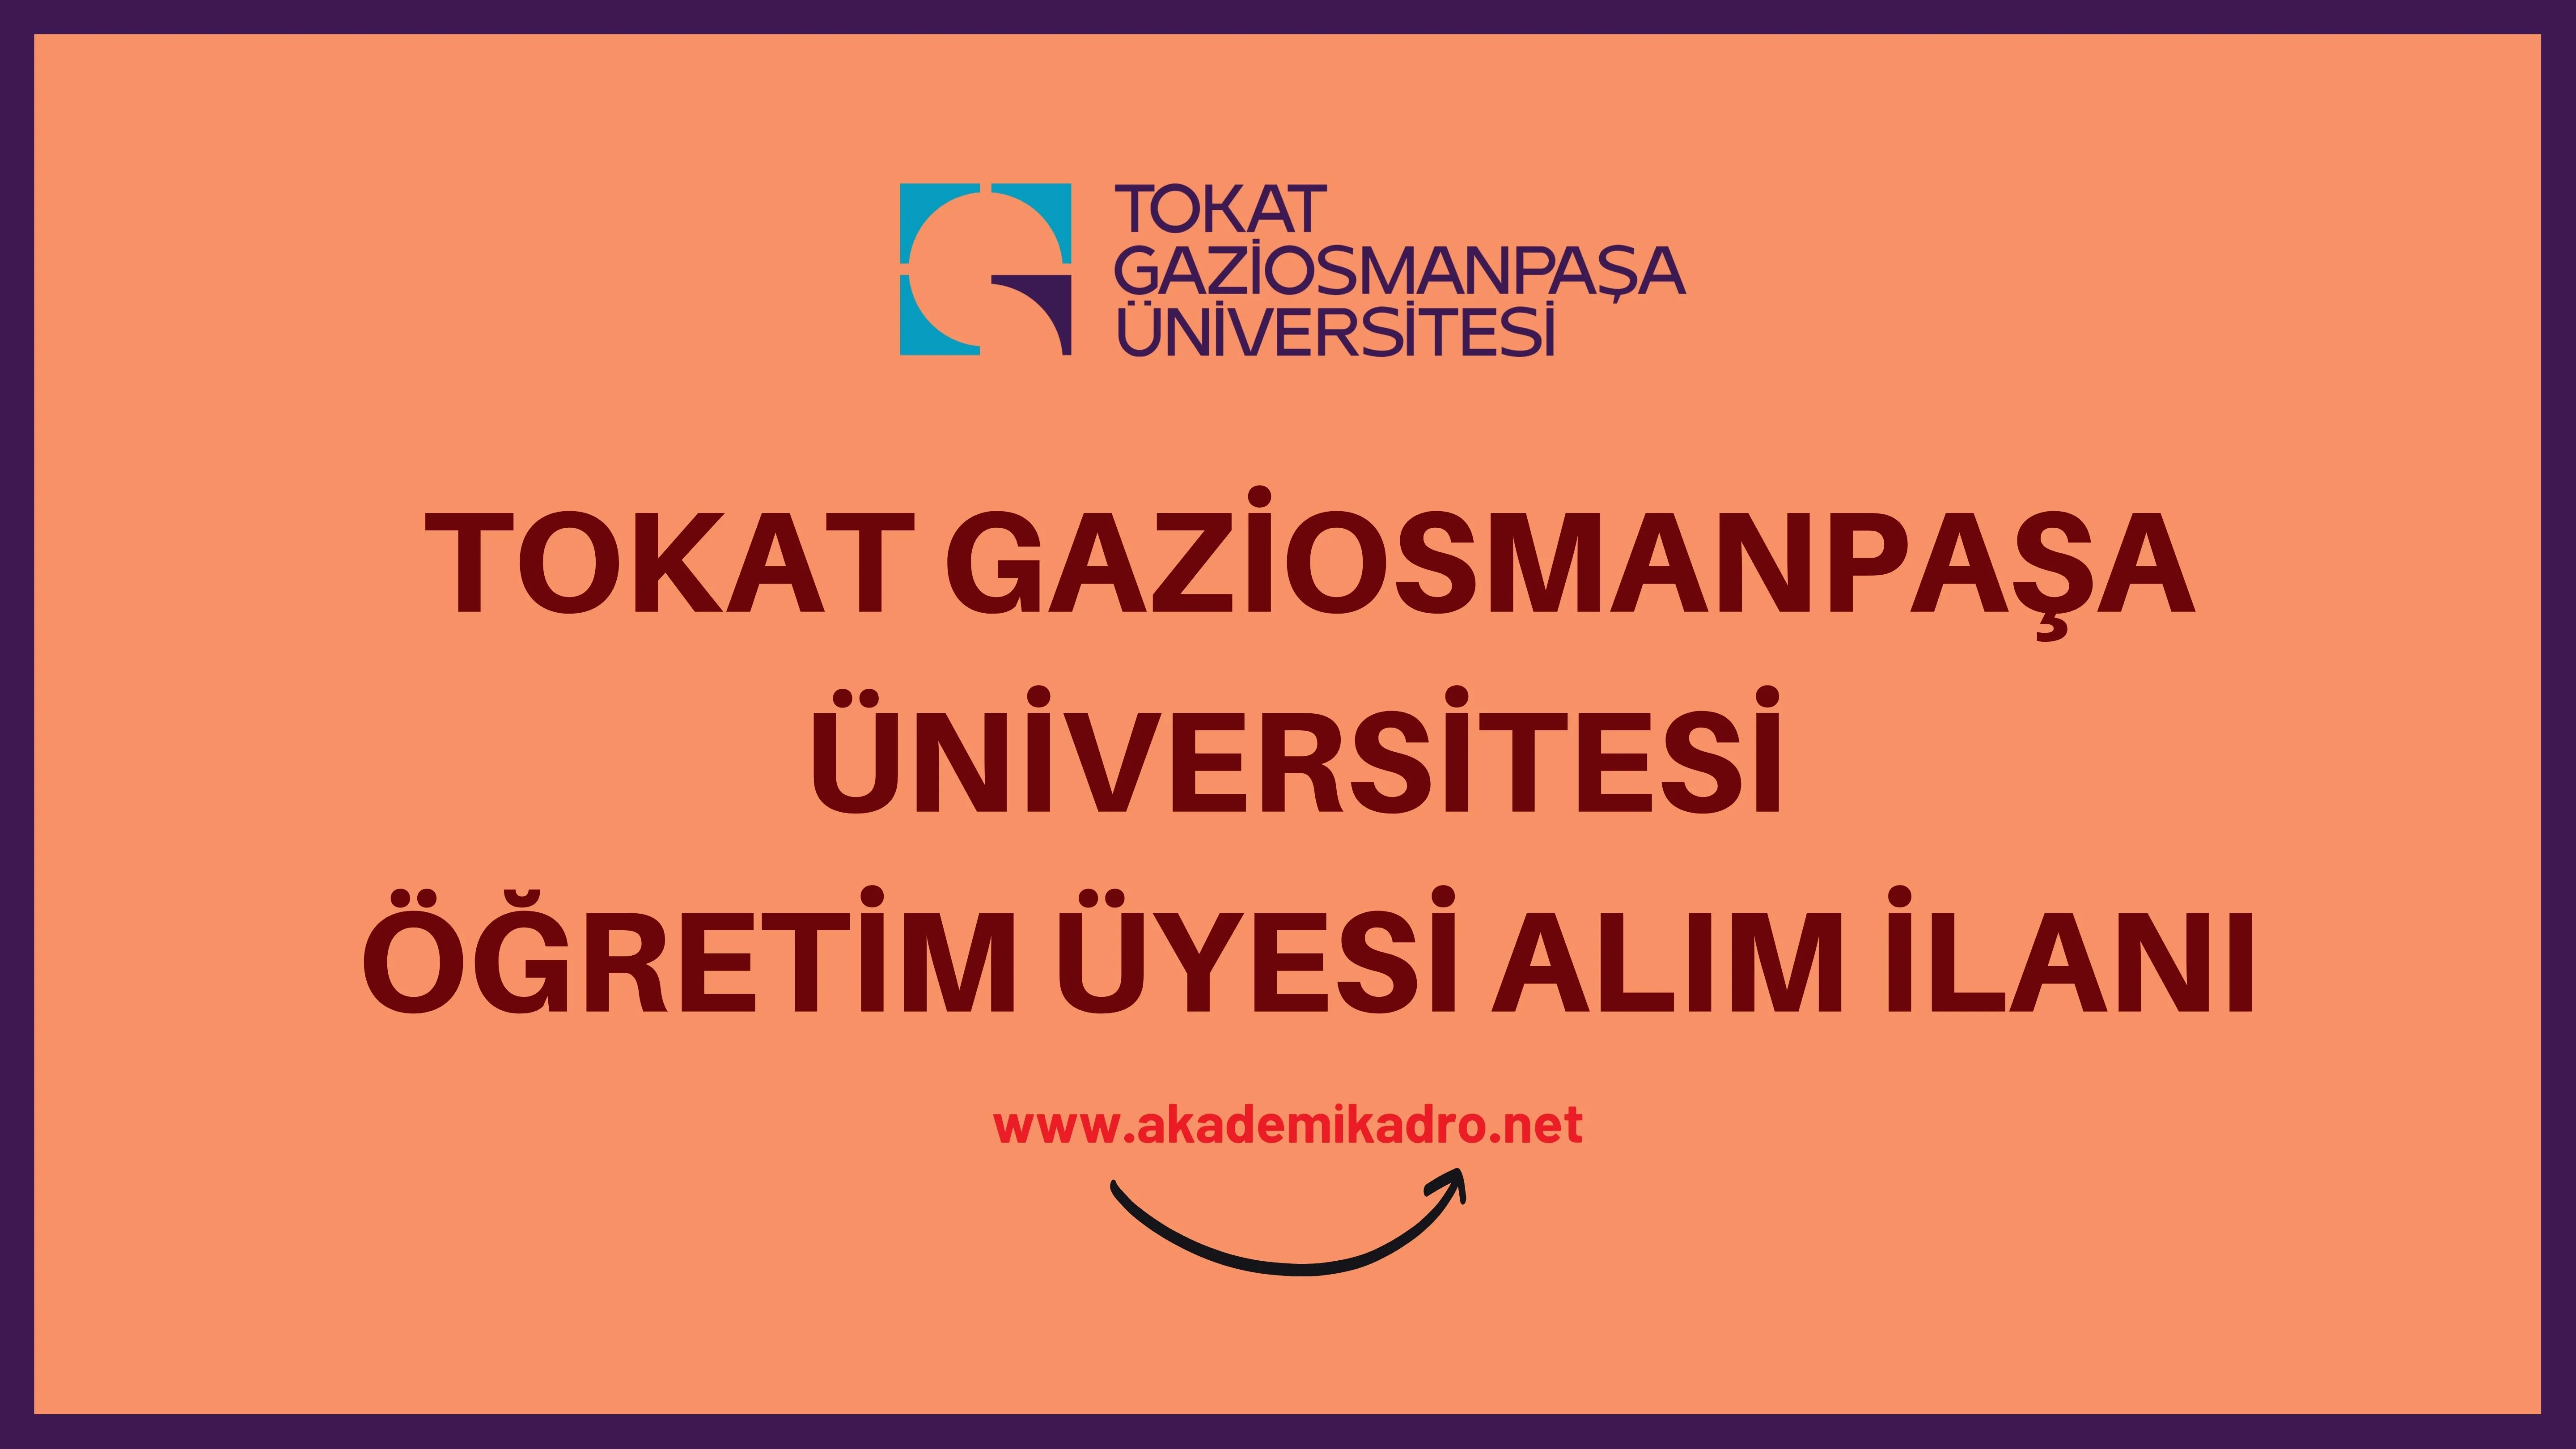 Tokat Gaziosmanpaşa Üniversitesi birçok alandan 35 akademik personel alacak.